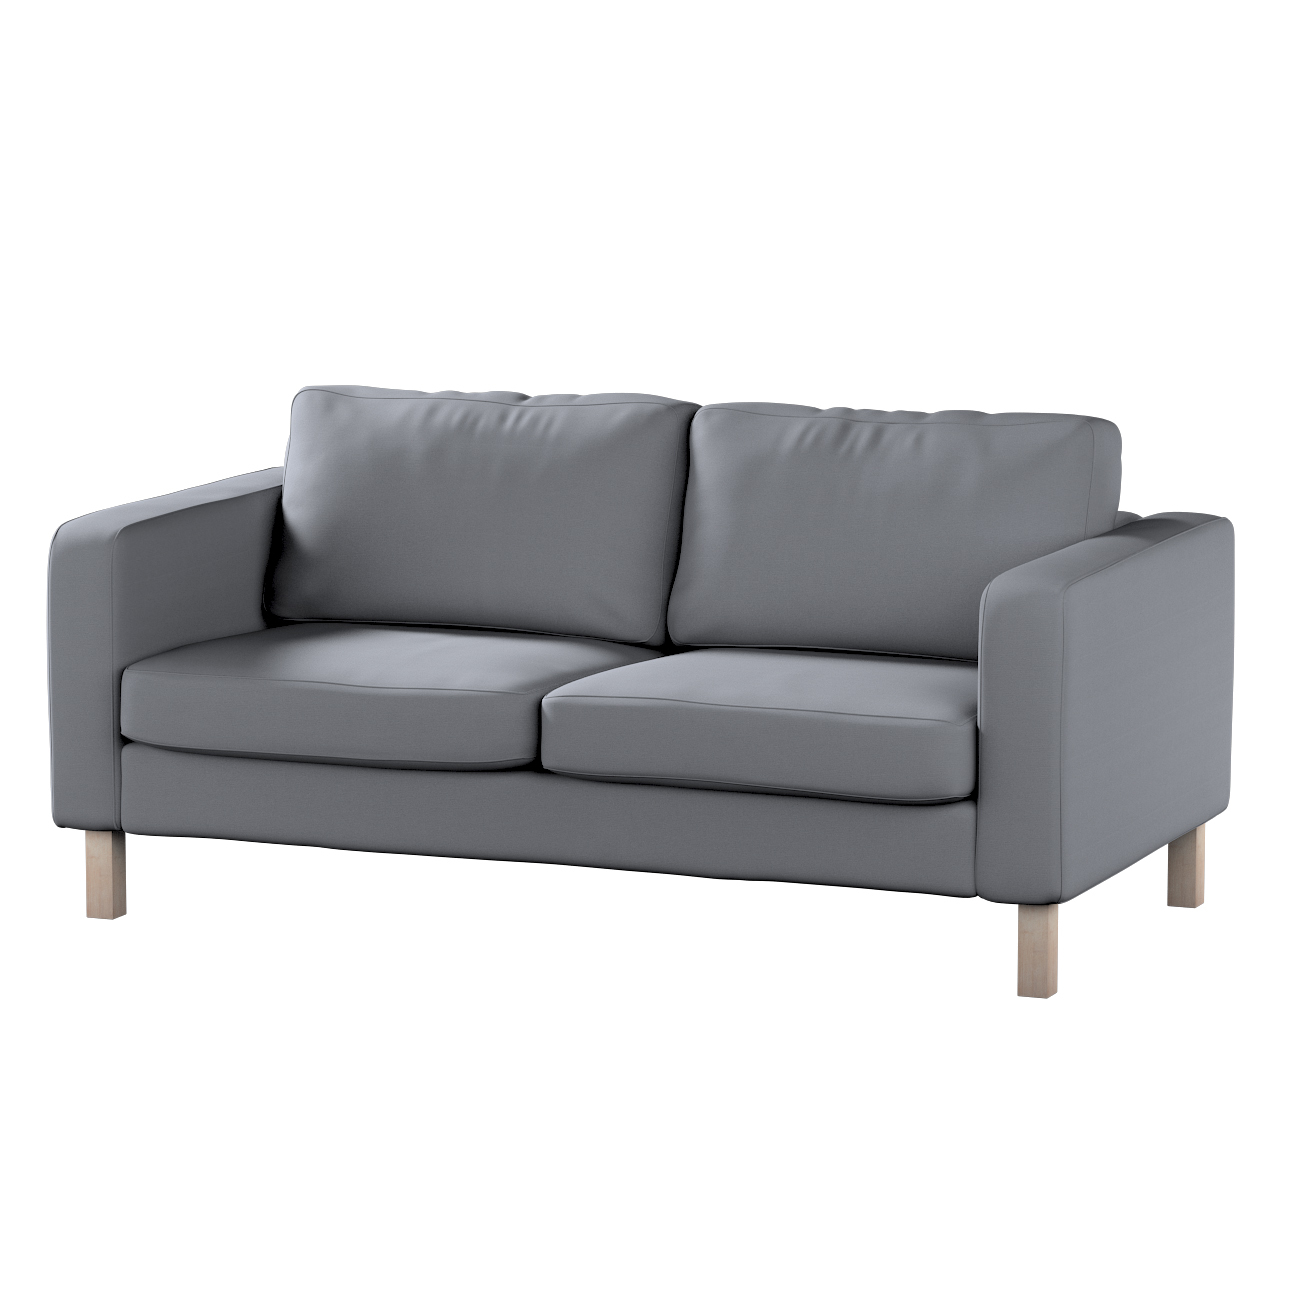 Bezug für Karlstad 2-Sitzer Sofa nicht ausklappbar, silbergrau, Sofahusse, günstig online kaufen